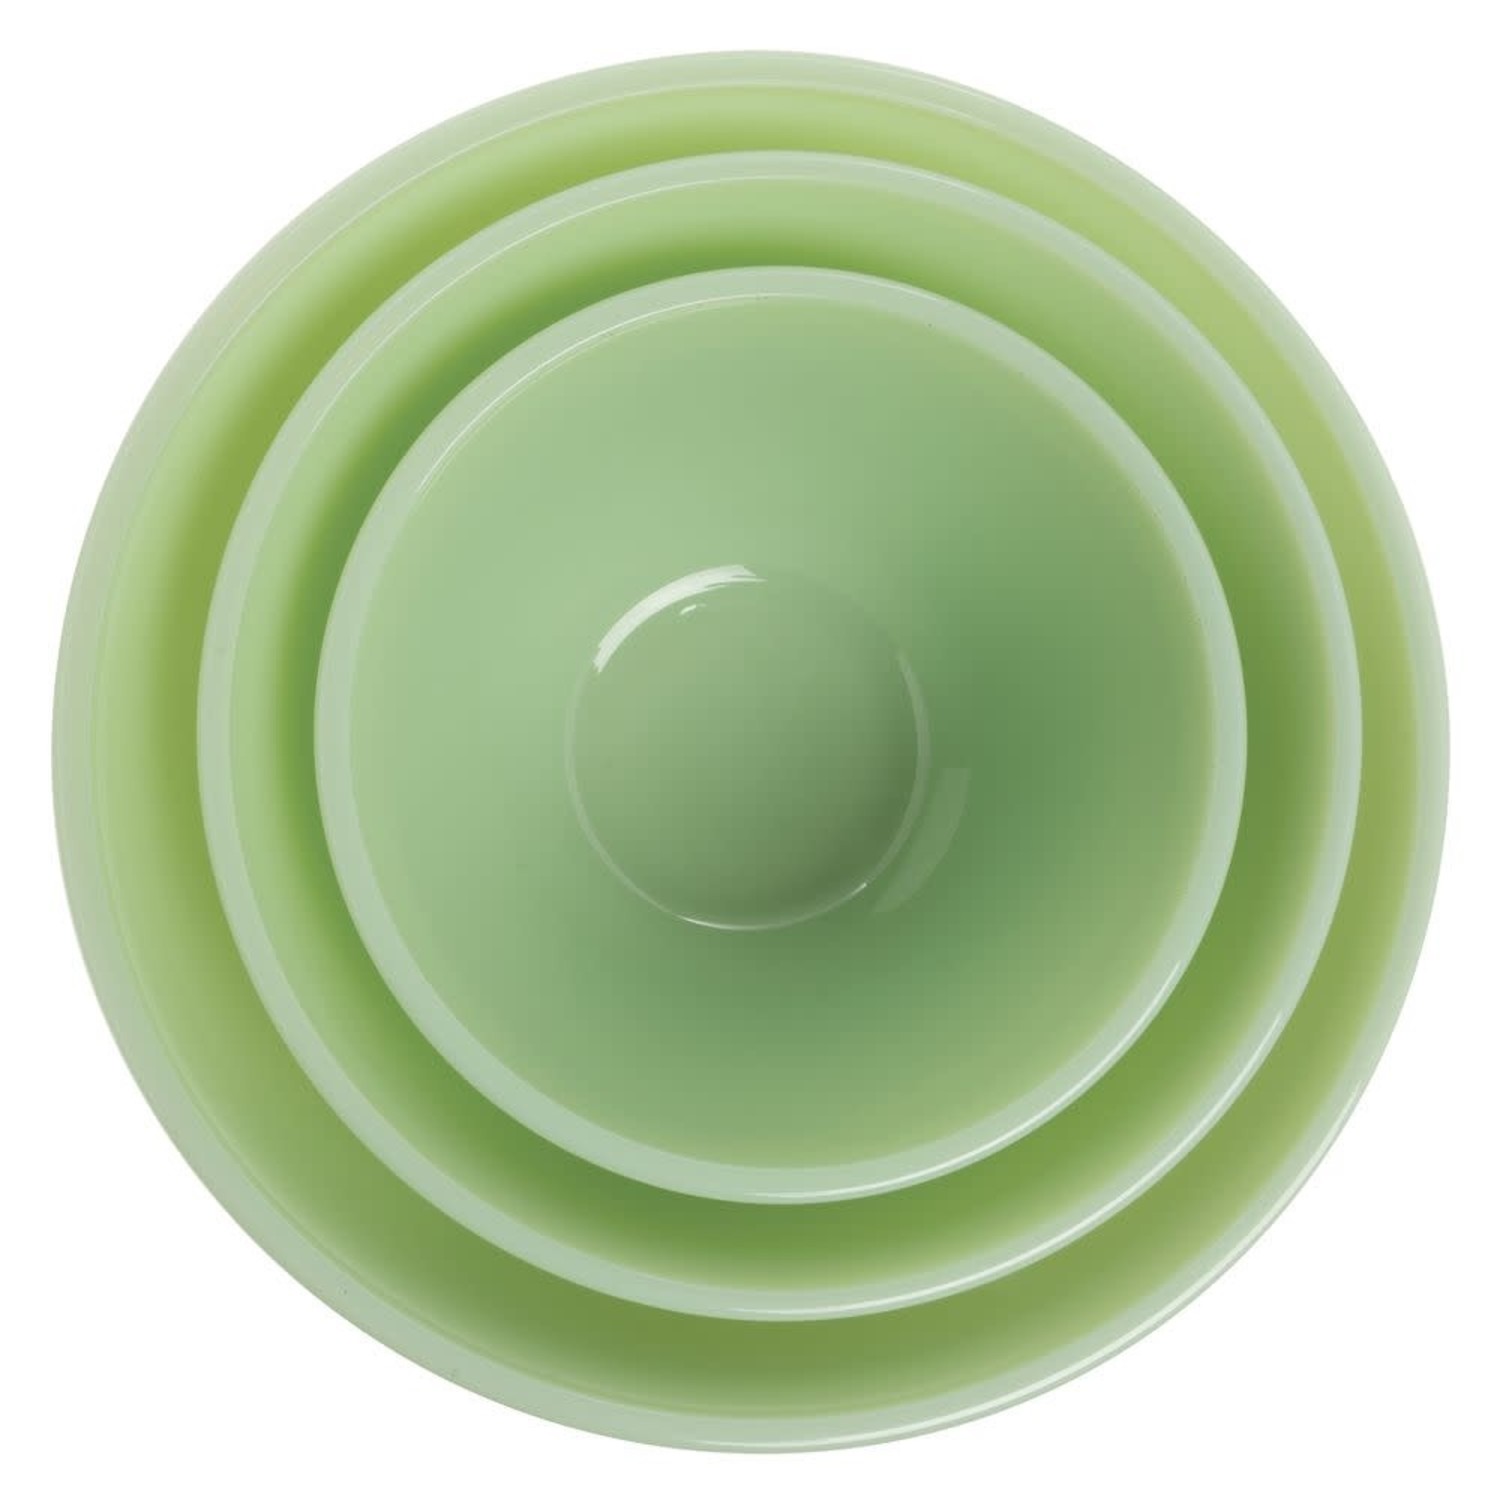 https://cdn.shoplightspeed.com/shops/633447/files/38293242/1500x4000x3/mosser-jade-mixing-bowls-set-of-3.jpg